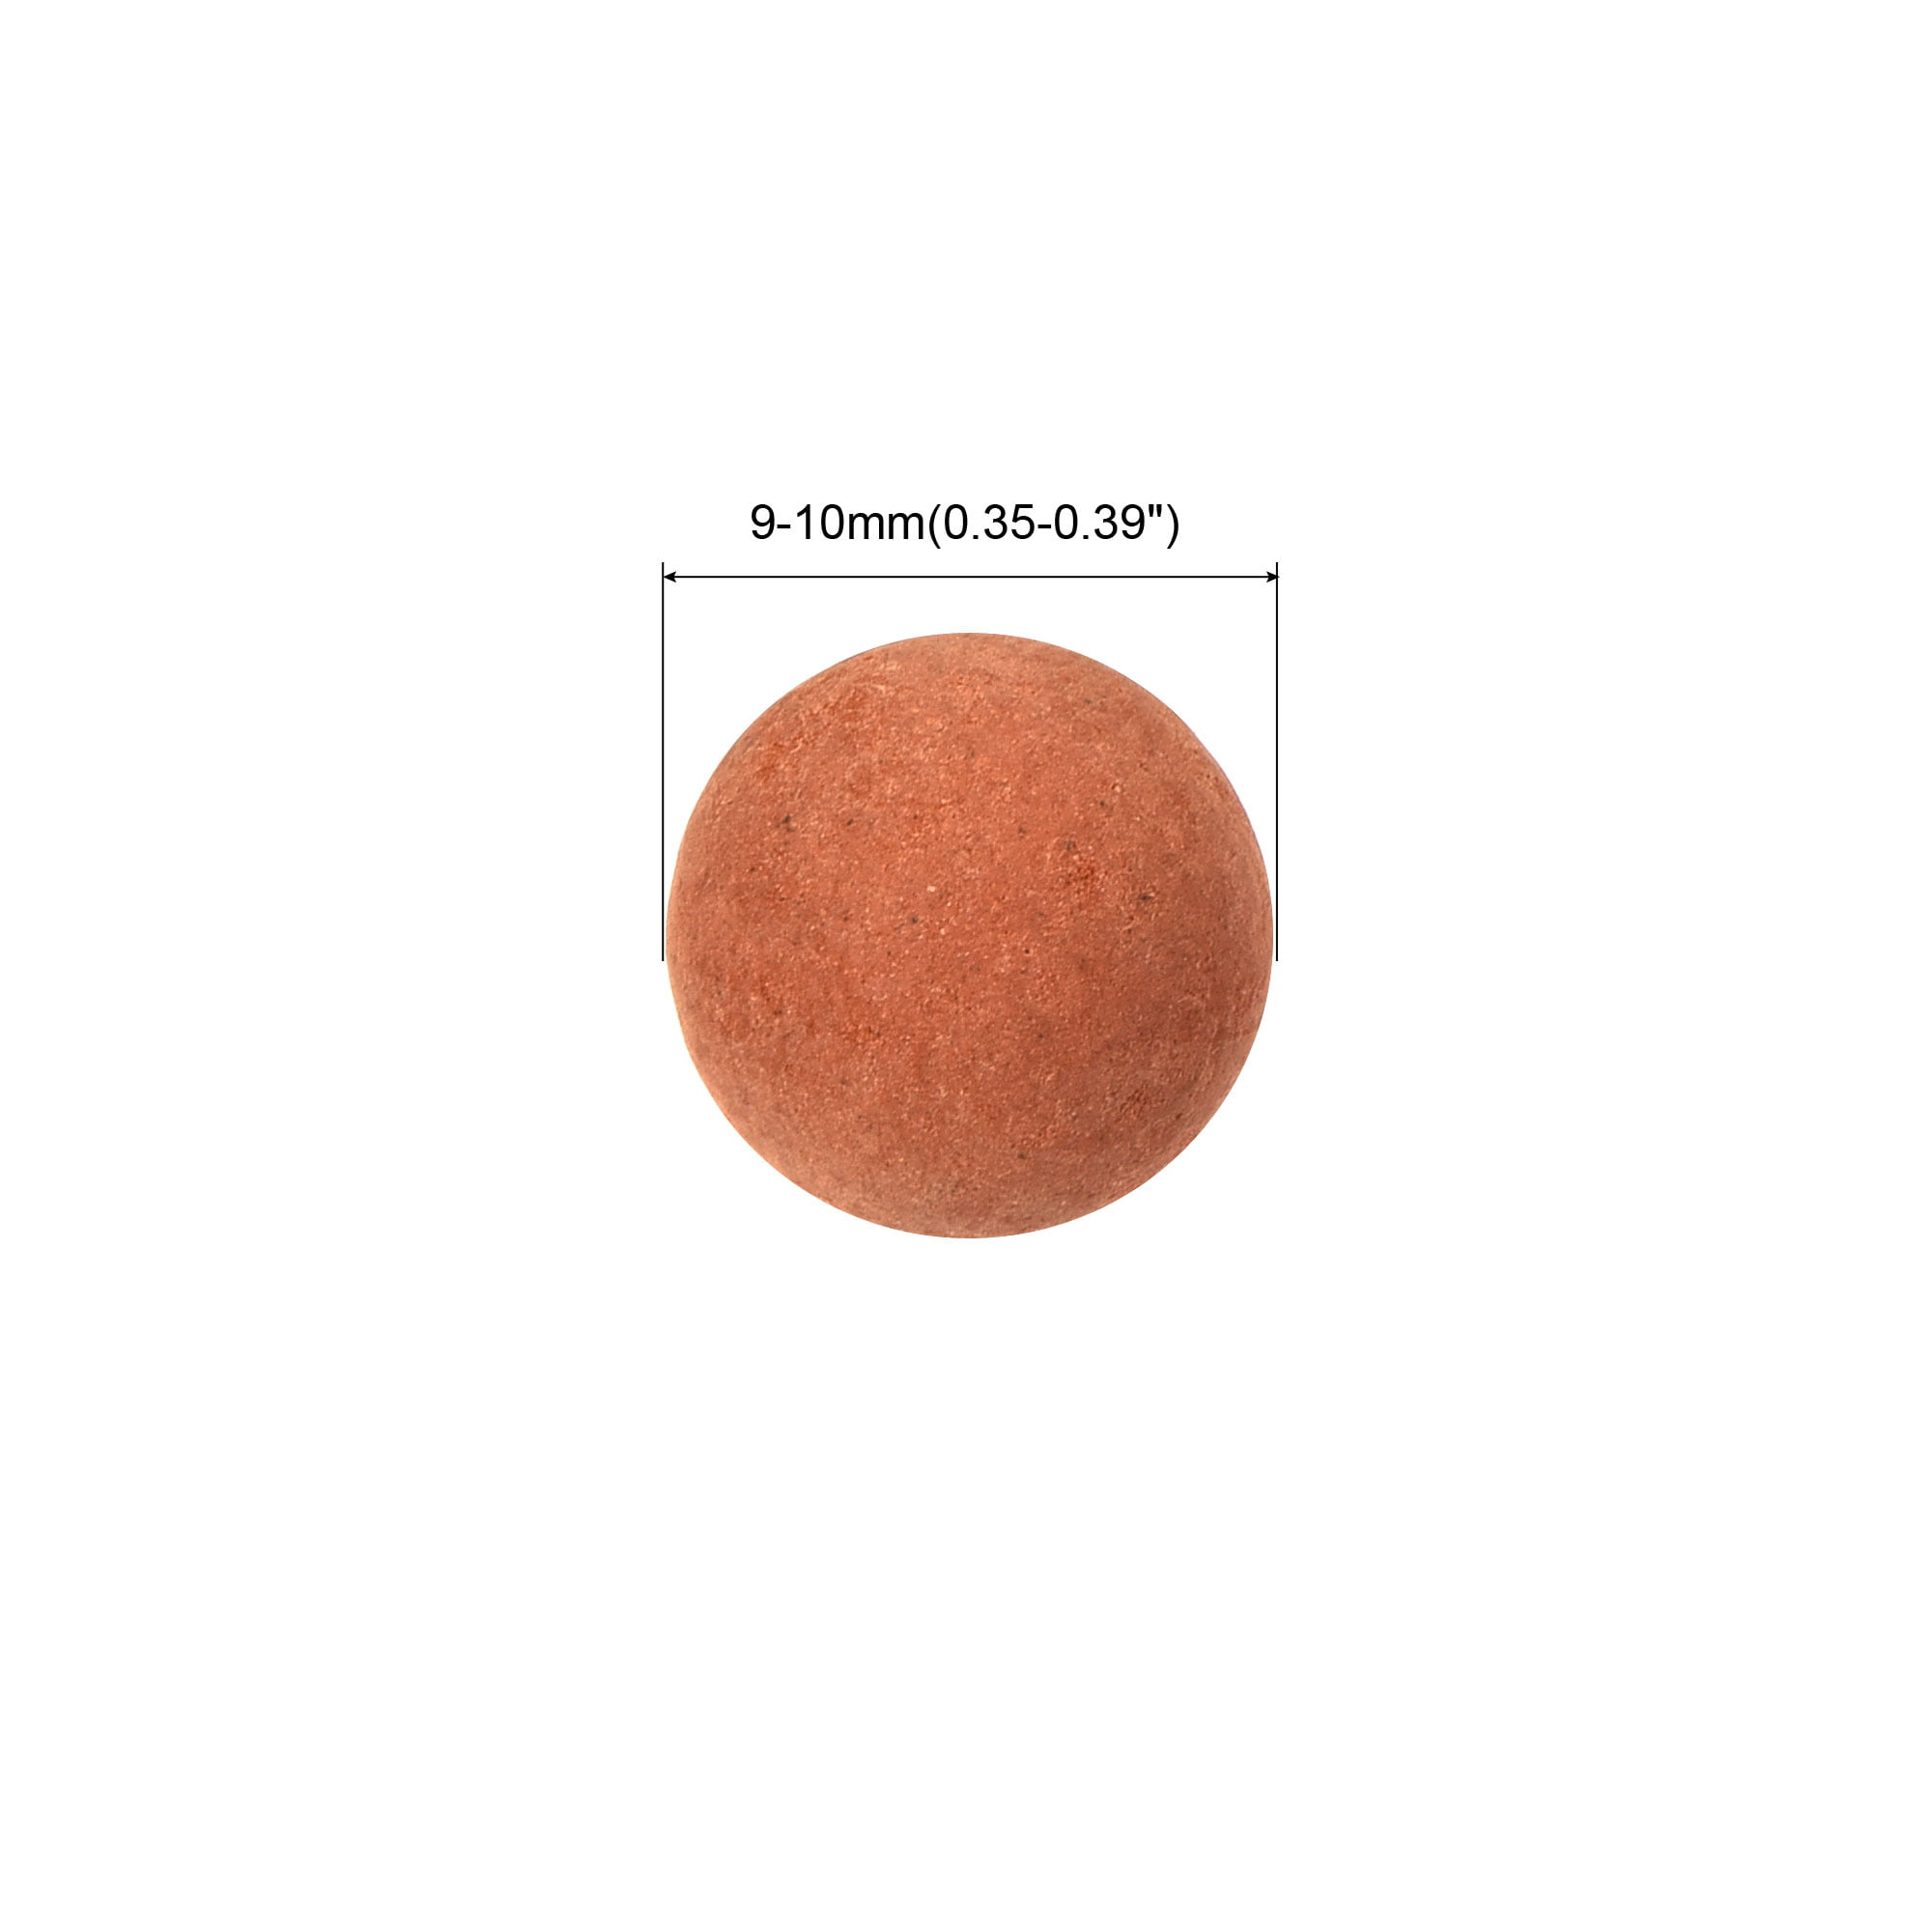  4lb LECA Clay Pebbles 4-5MM- Pink Clay Balls for